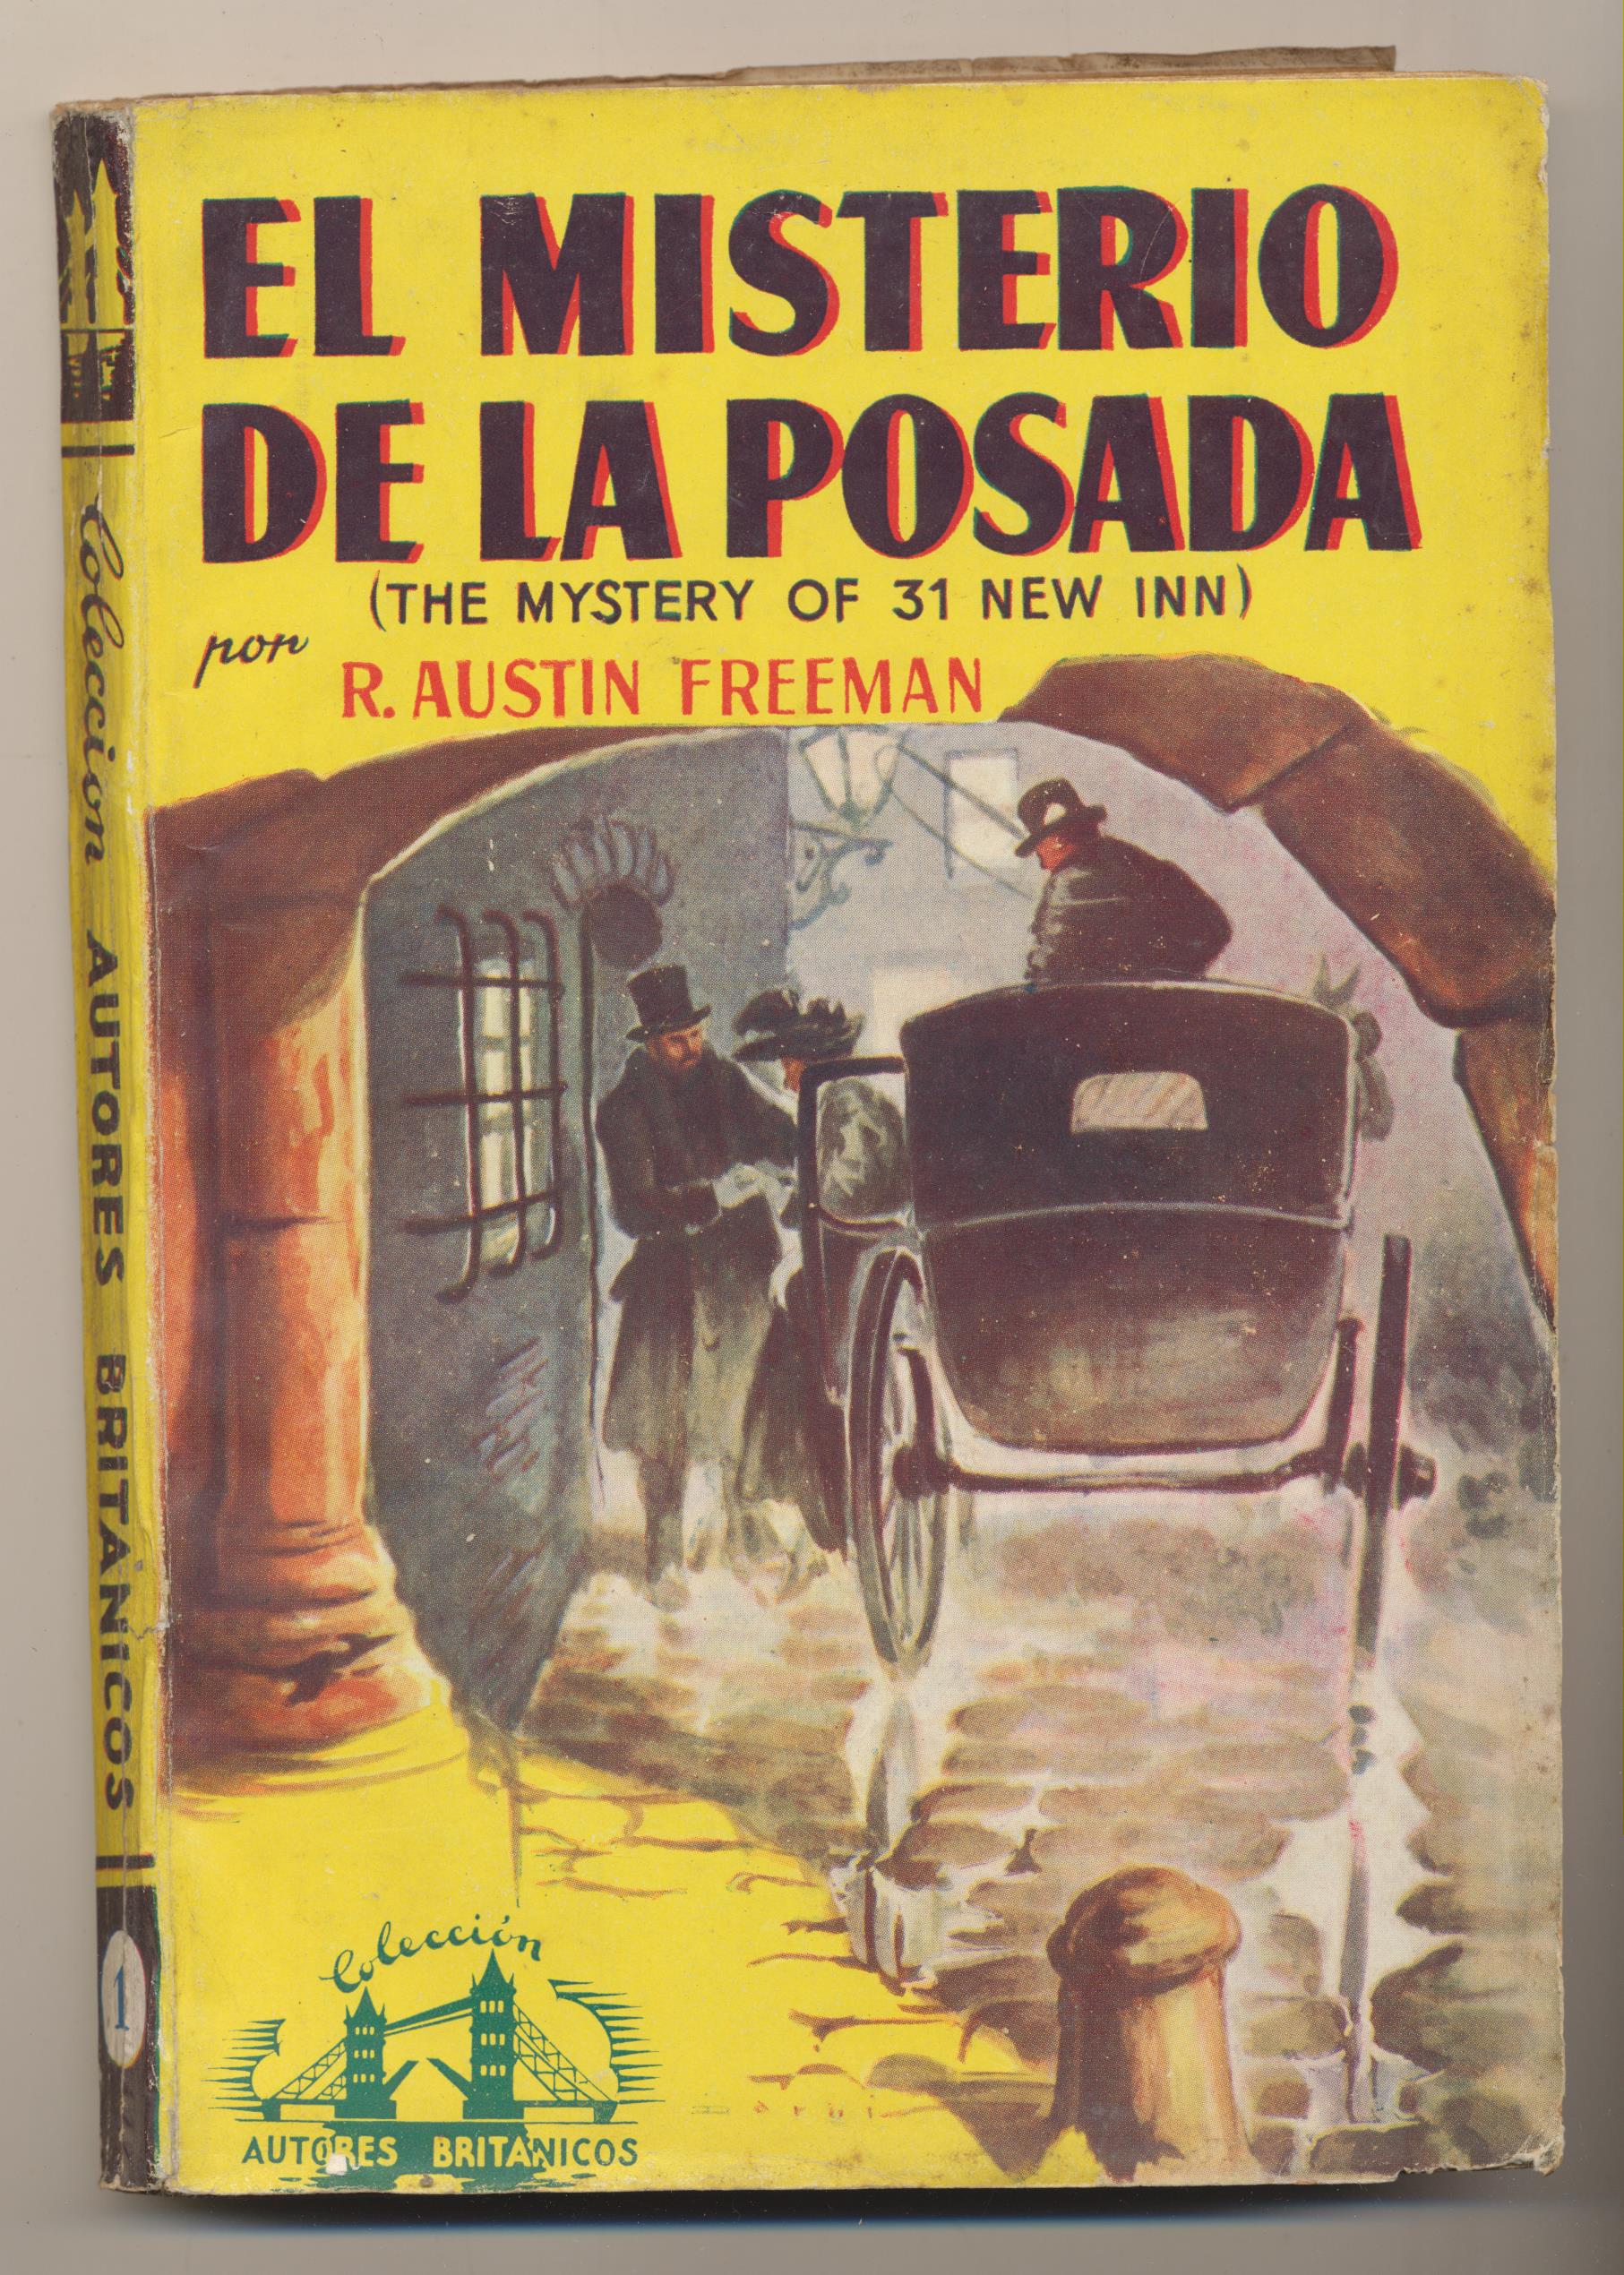 Autores Británicos nº 1. R. Austin Freeman. El Misterio de la Posada. 1ª Edición Cliper 1945